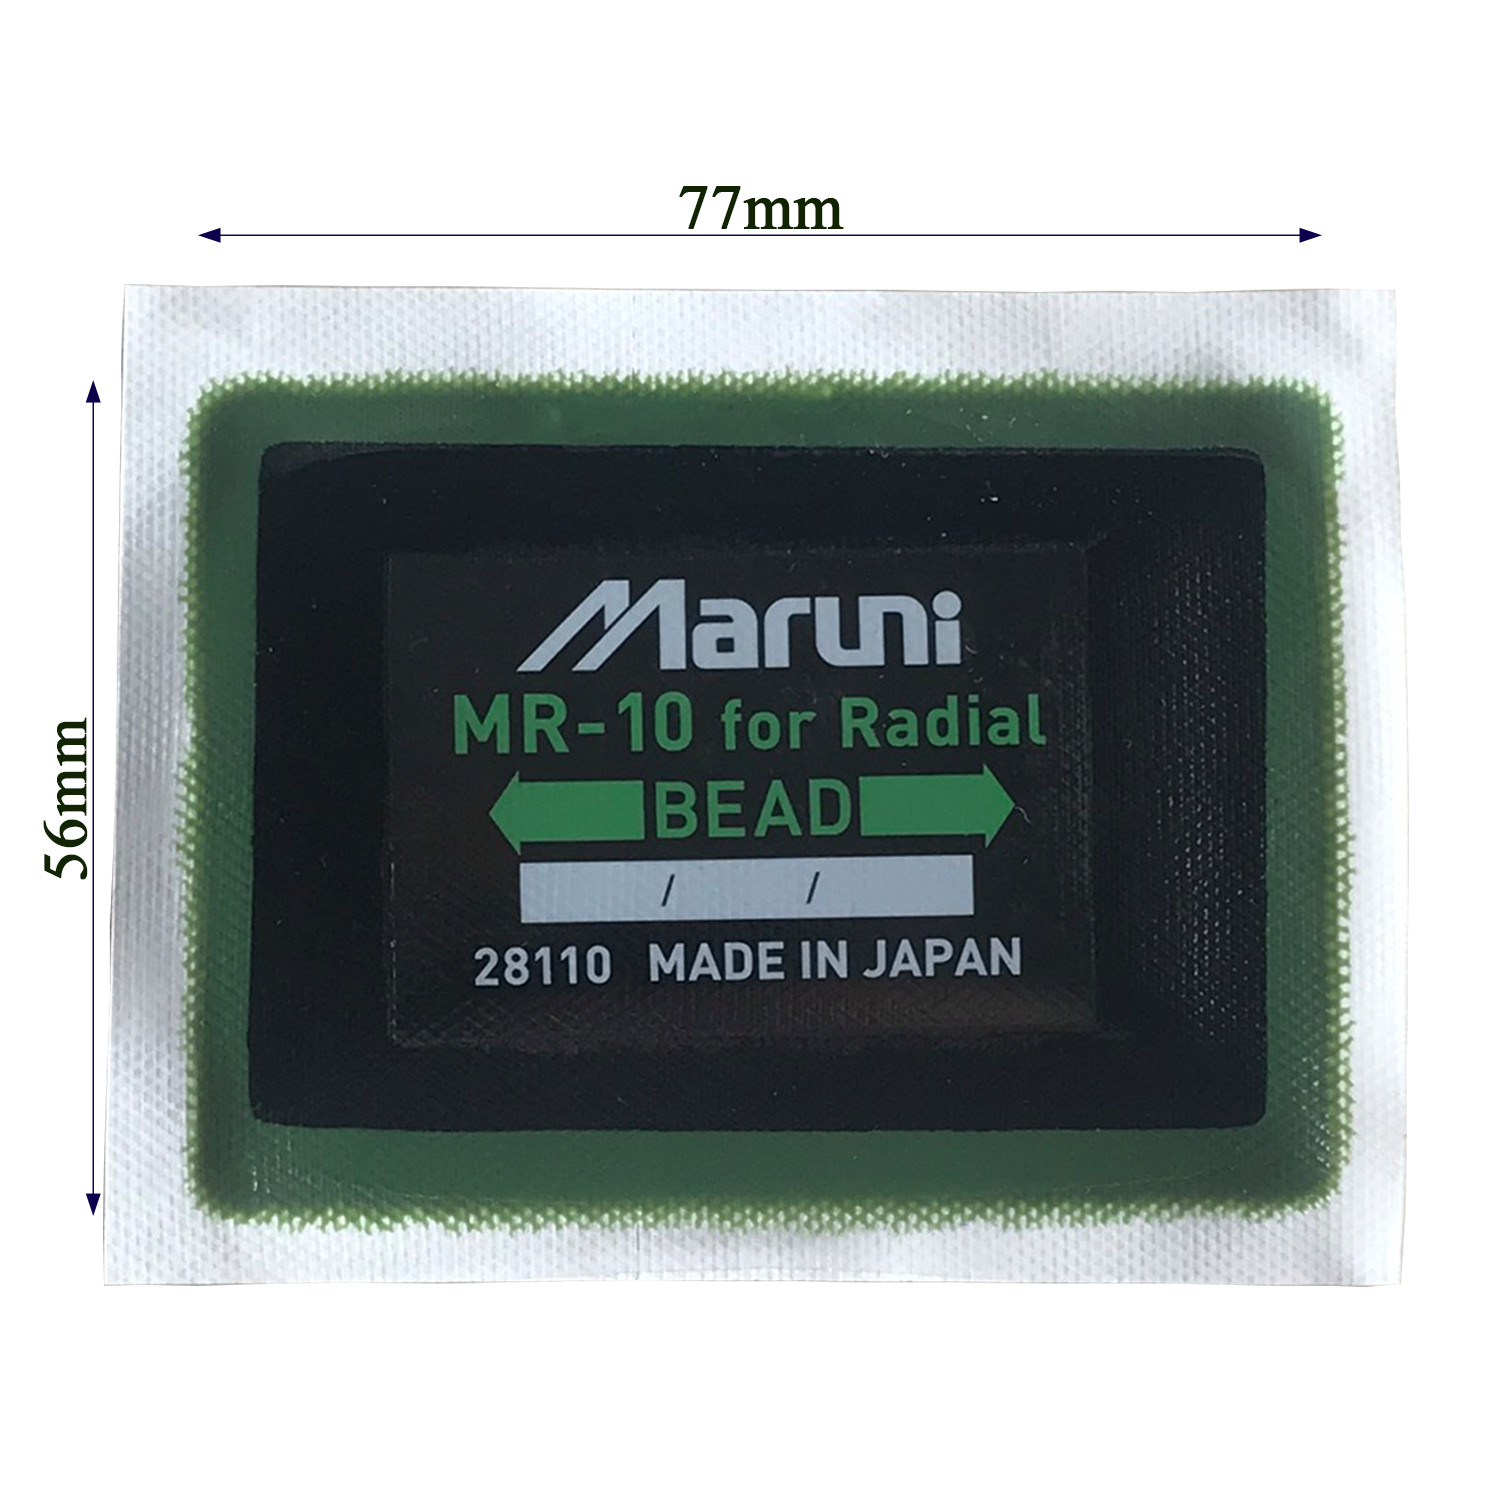 Hộp miếng vá có bố MR-10 thương hiệu Maruni - Nhật bản (20 miếng/hộp)